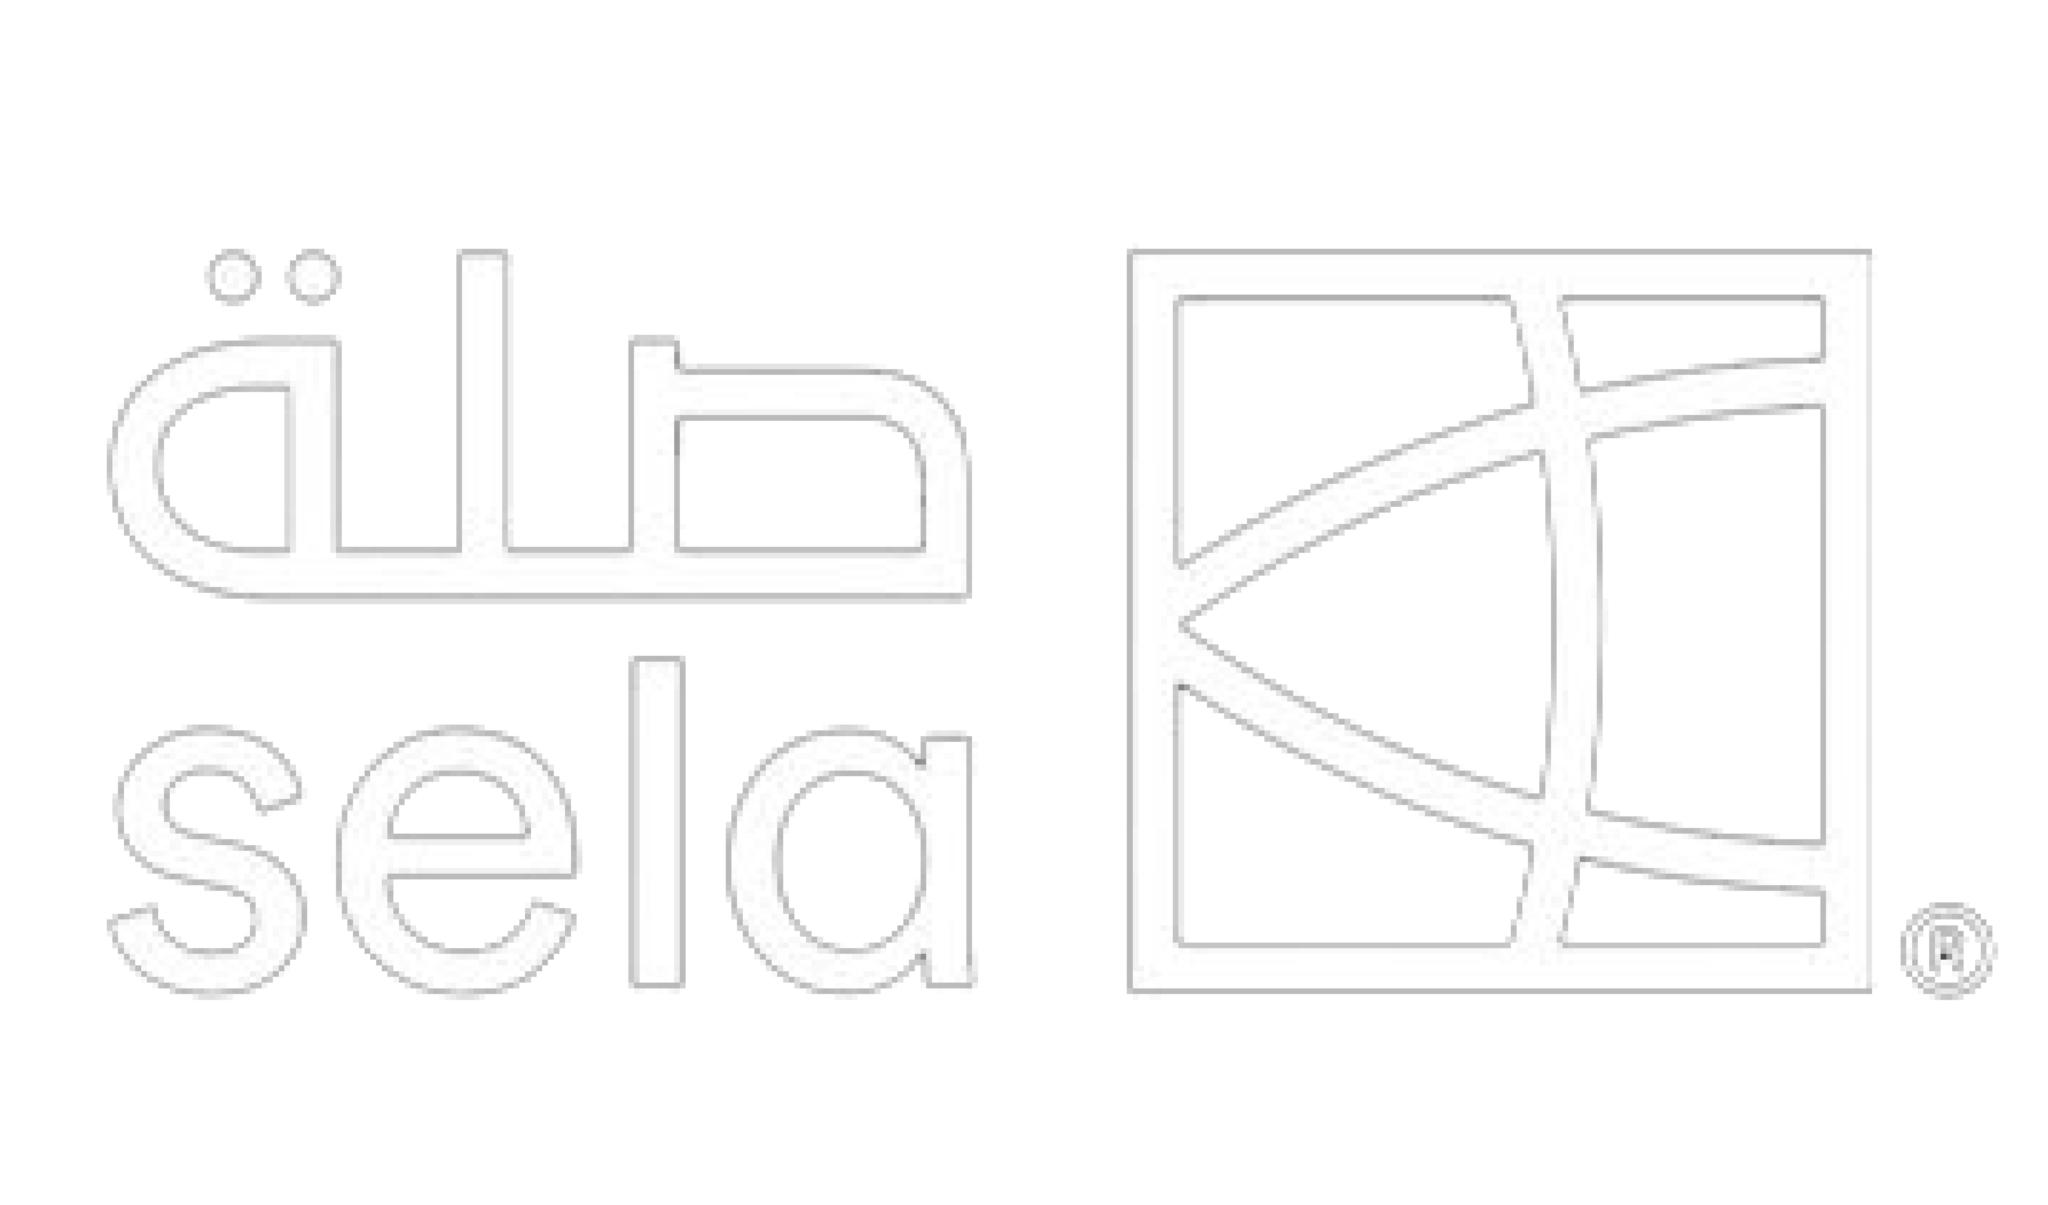 The Sela logo